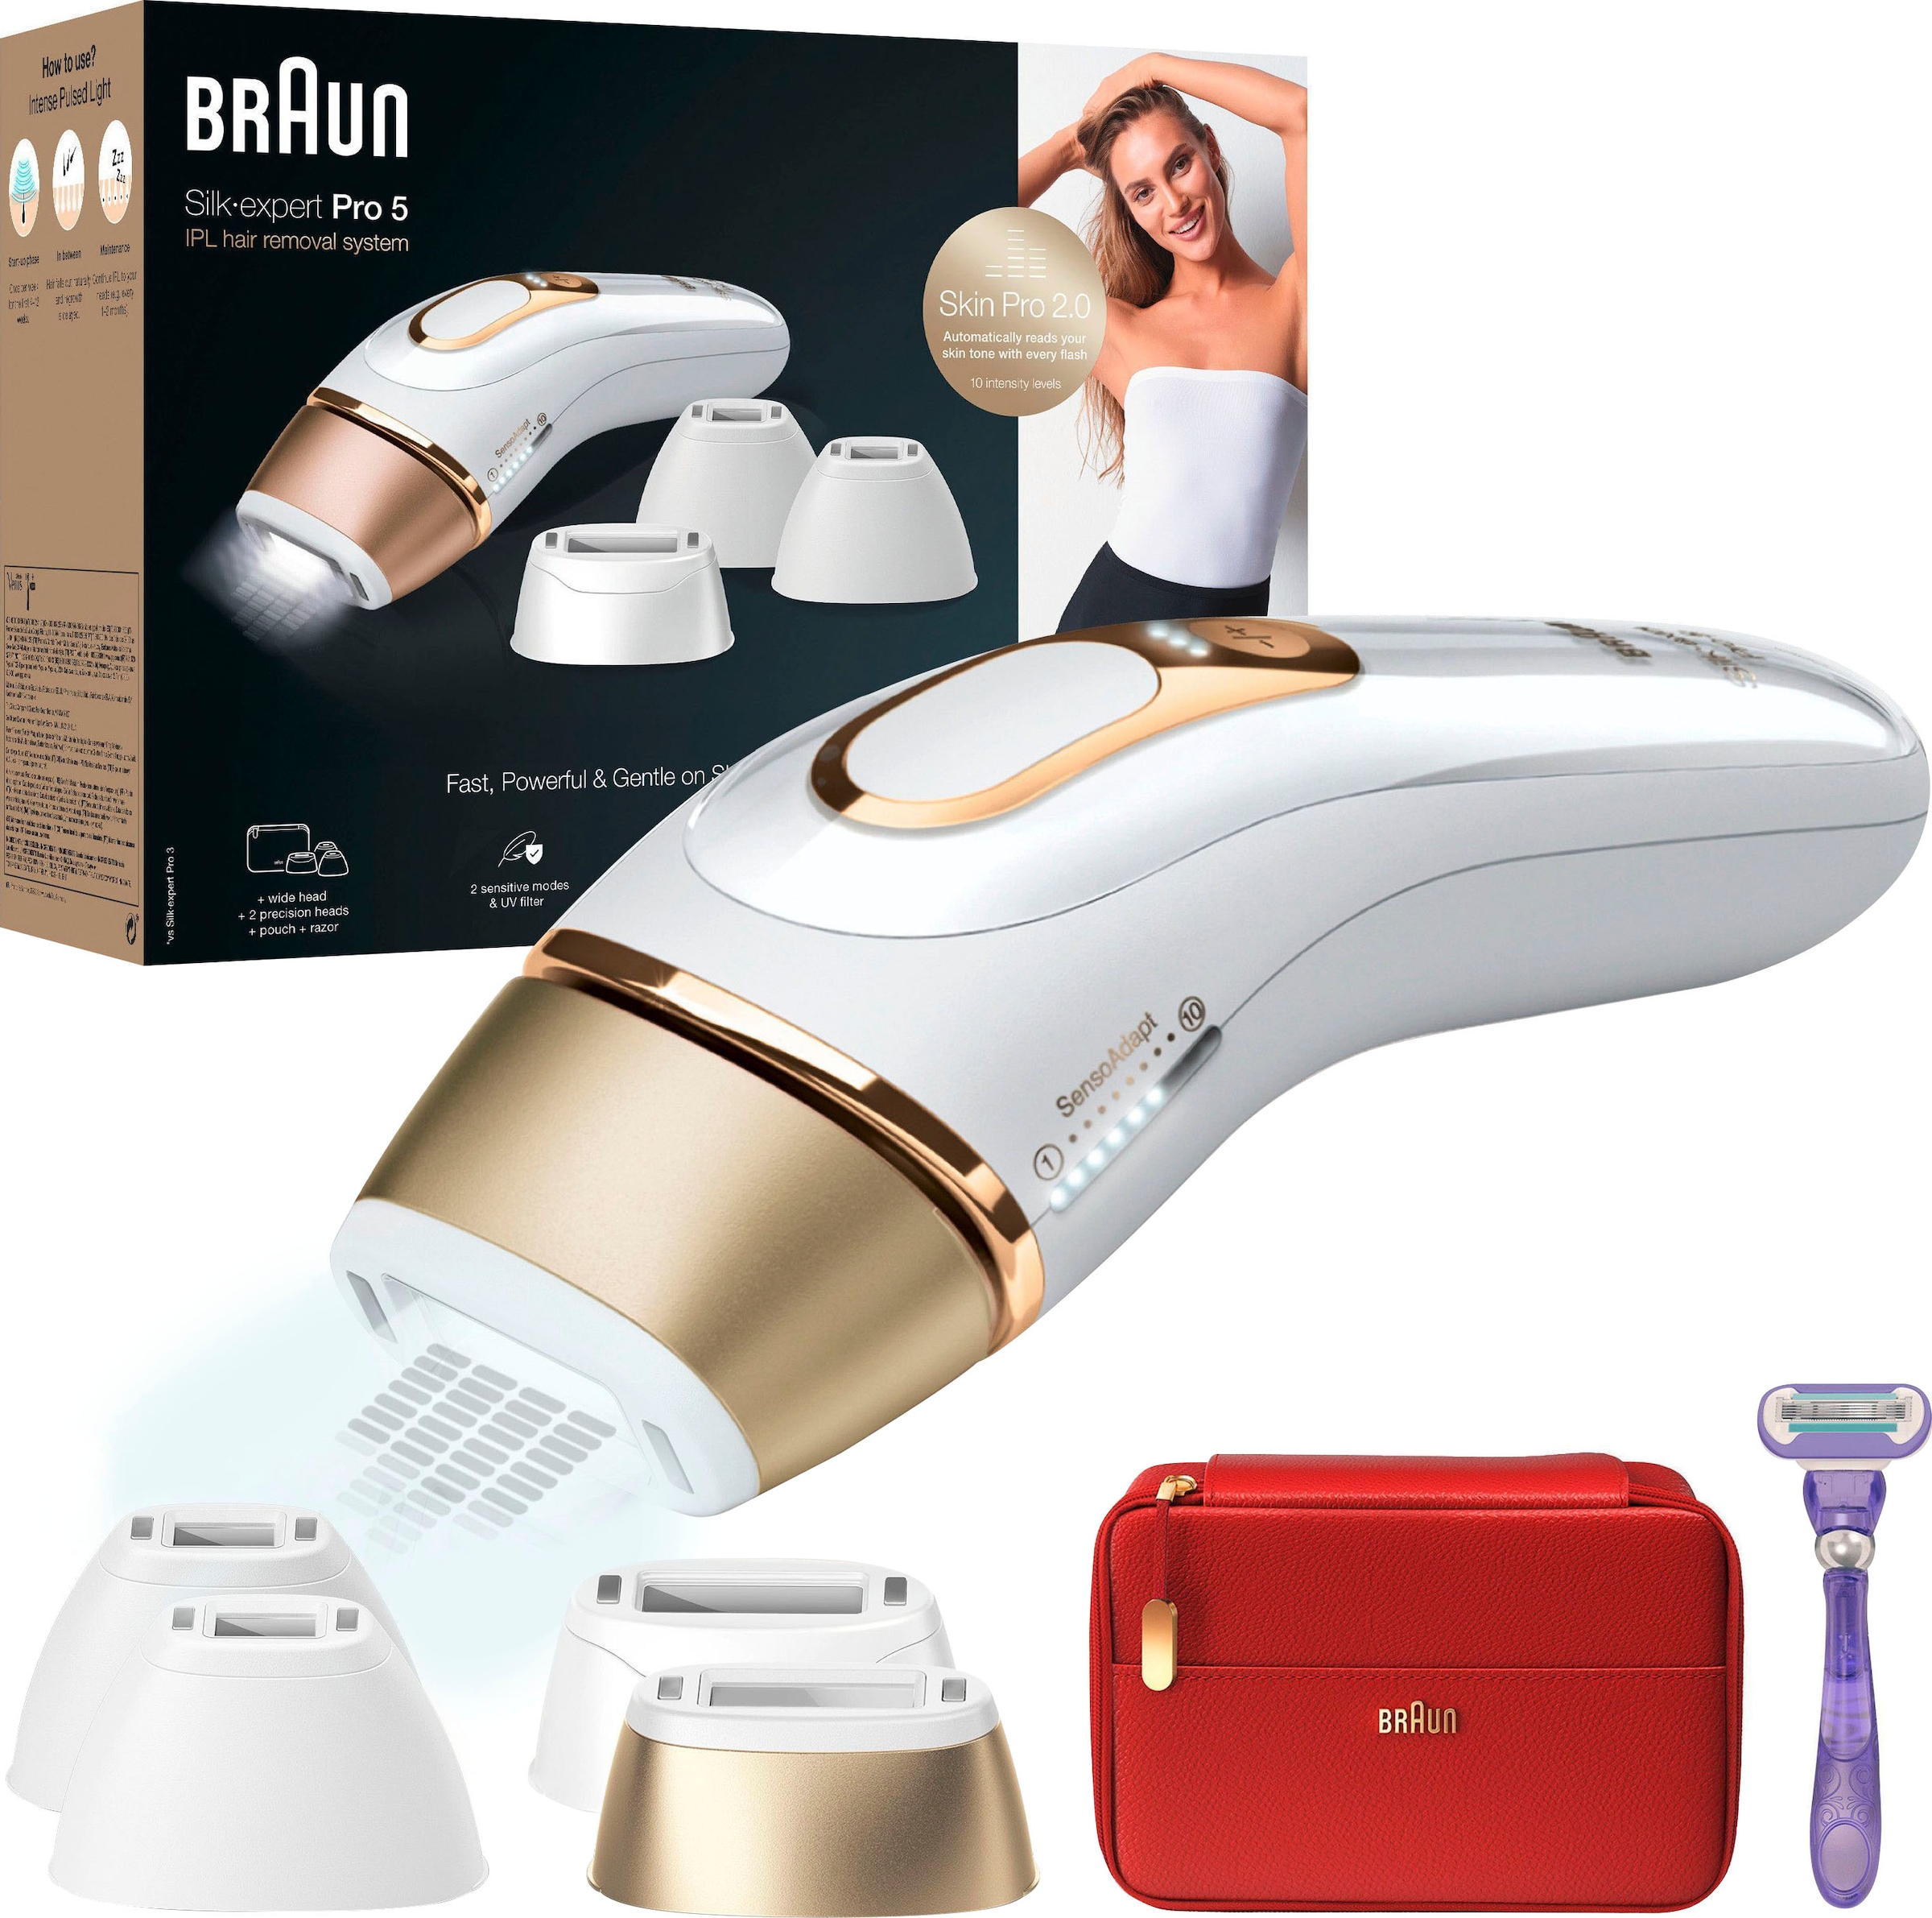 Braun IPL-Haarentferner »Silk-Expert Pro 5 PL5387«, 400.000 Lichtimpulse,  Skin Pro 2.0 Sensor online bestellen | BAUR